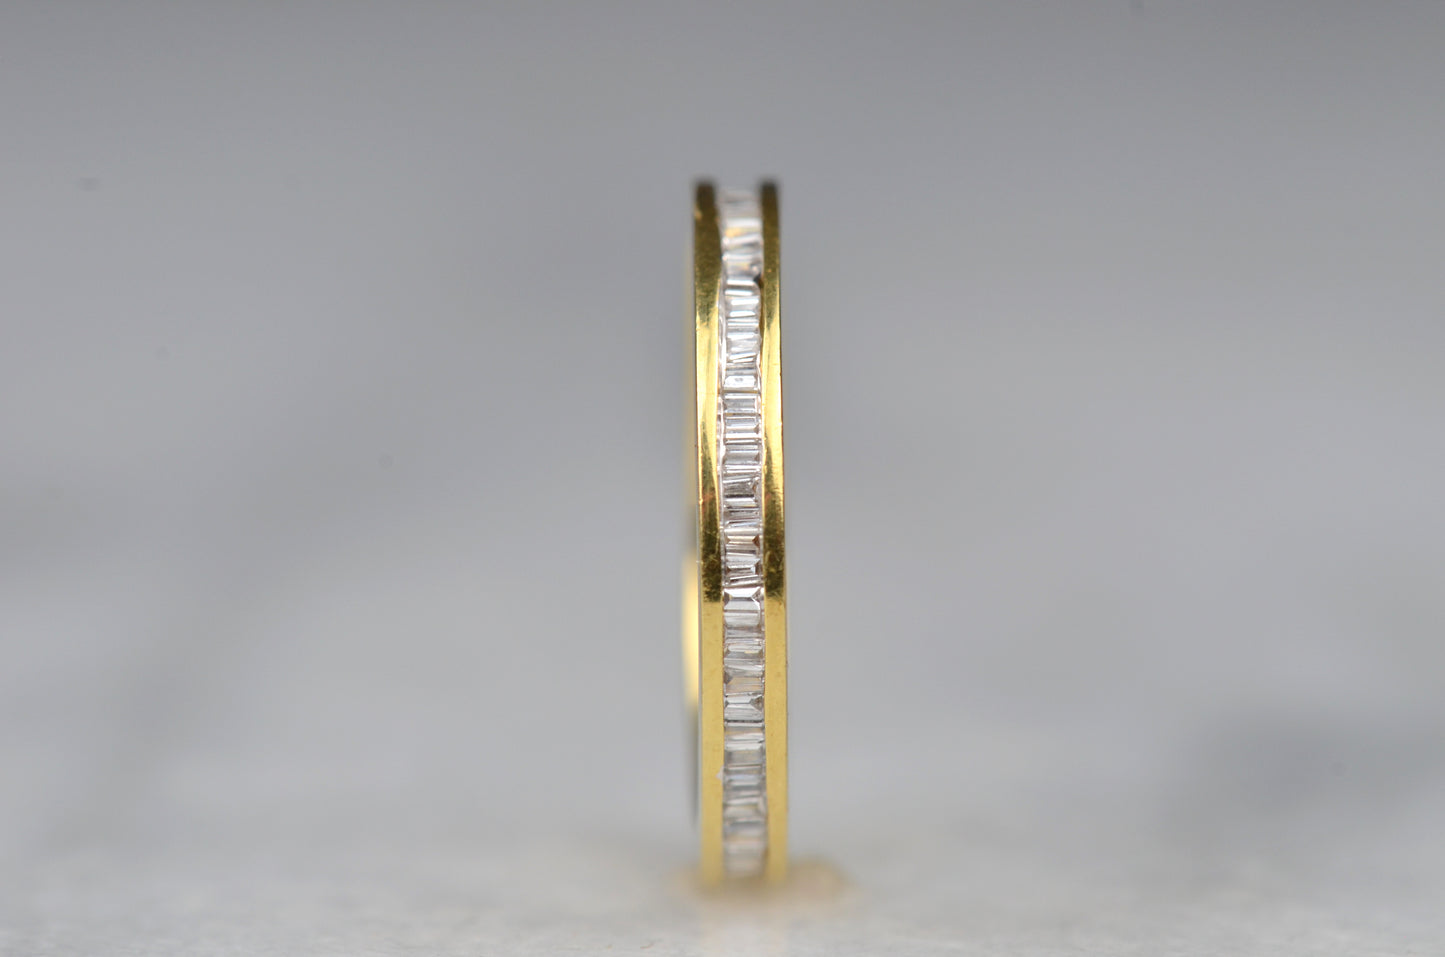 Shimmering Vintage Baguette Eternity Ring